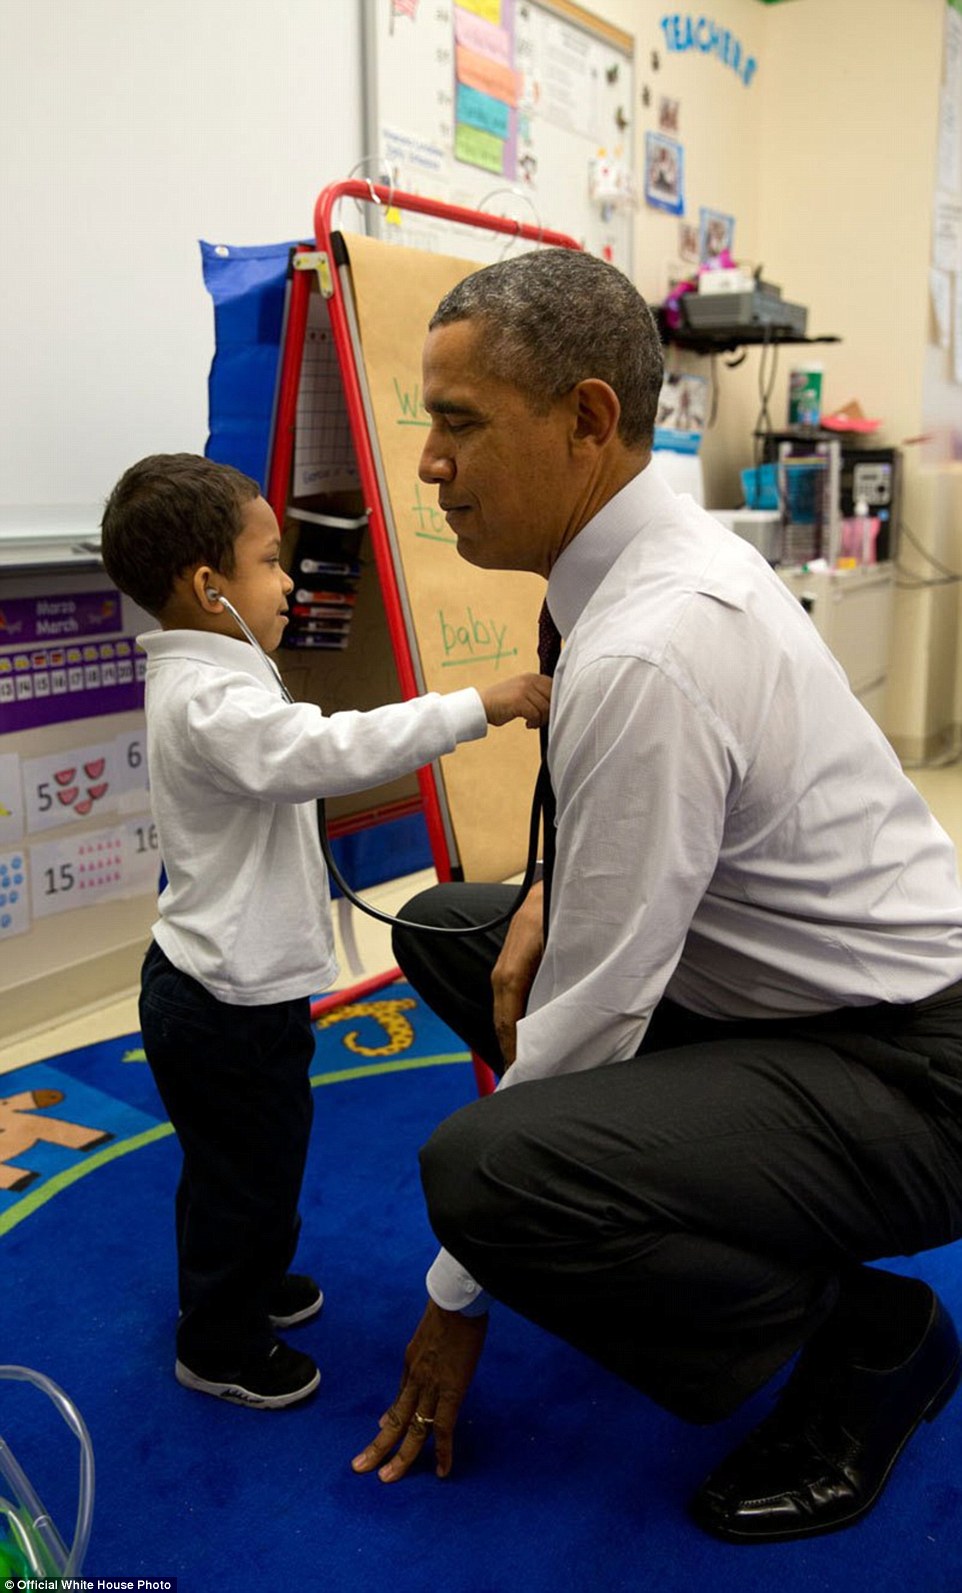 Επίσκεψη σε σχολείο- λίγο πριν φύγει, ο Ομάμα ζήτησε απ'το παιδάκι  που έπαιζε όλη την ώρα με το στηθοσκόπιο να τον εξετάσει